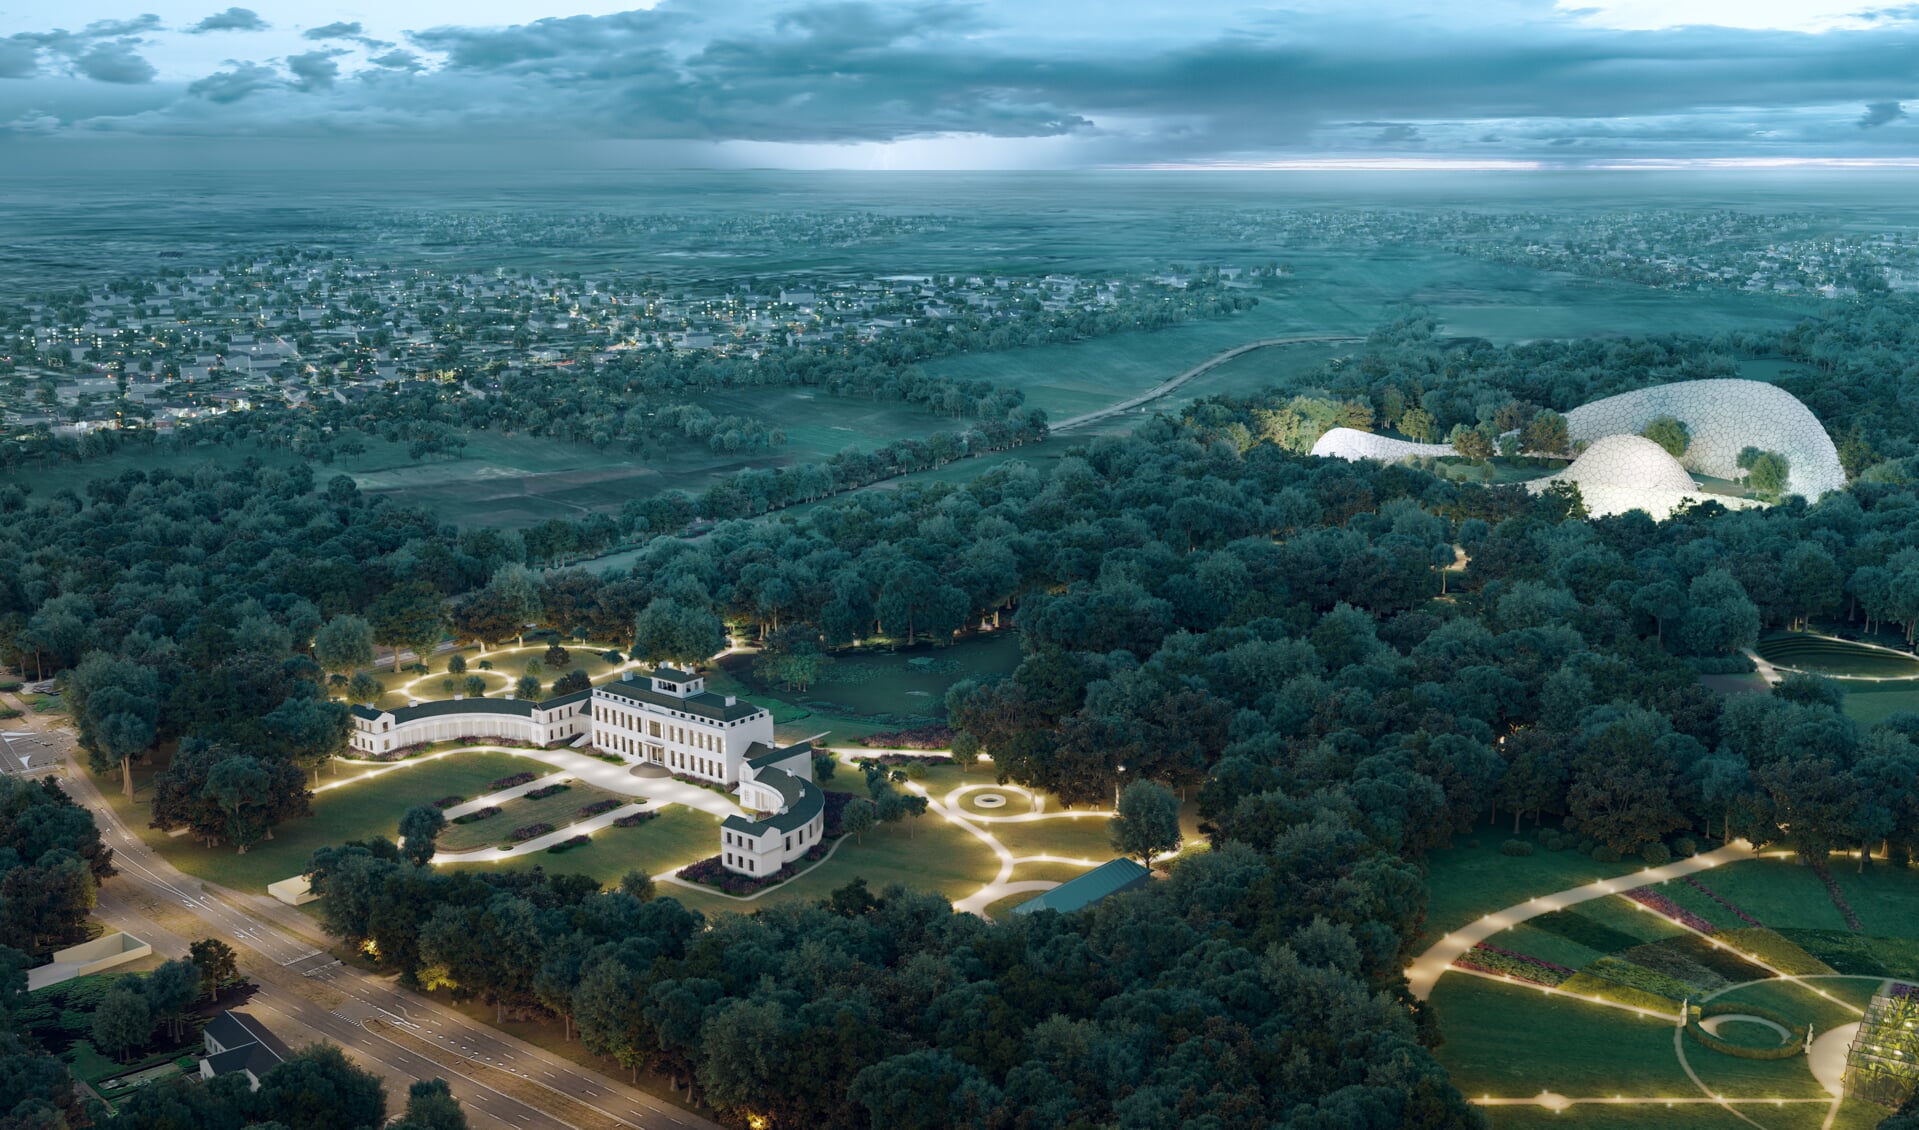 Het plan van Eden Soestdijk in 2017. met in het bos achter het paleis een grote kunststof hal. 